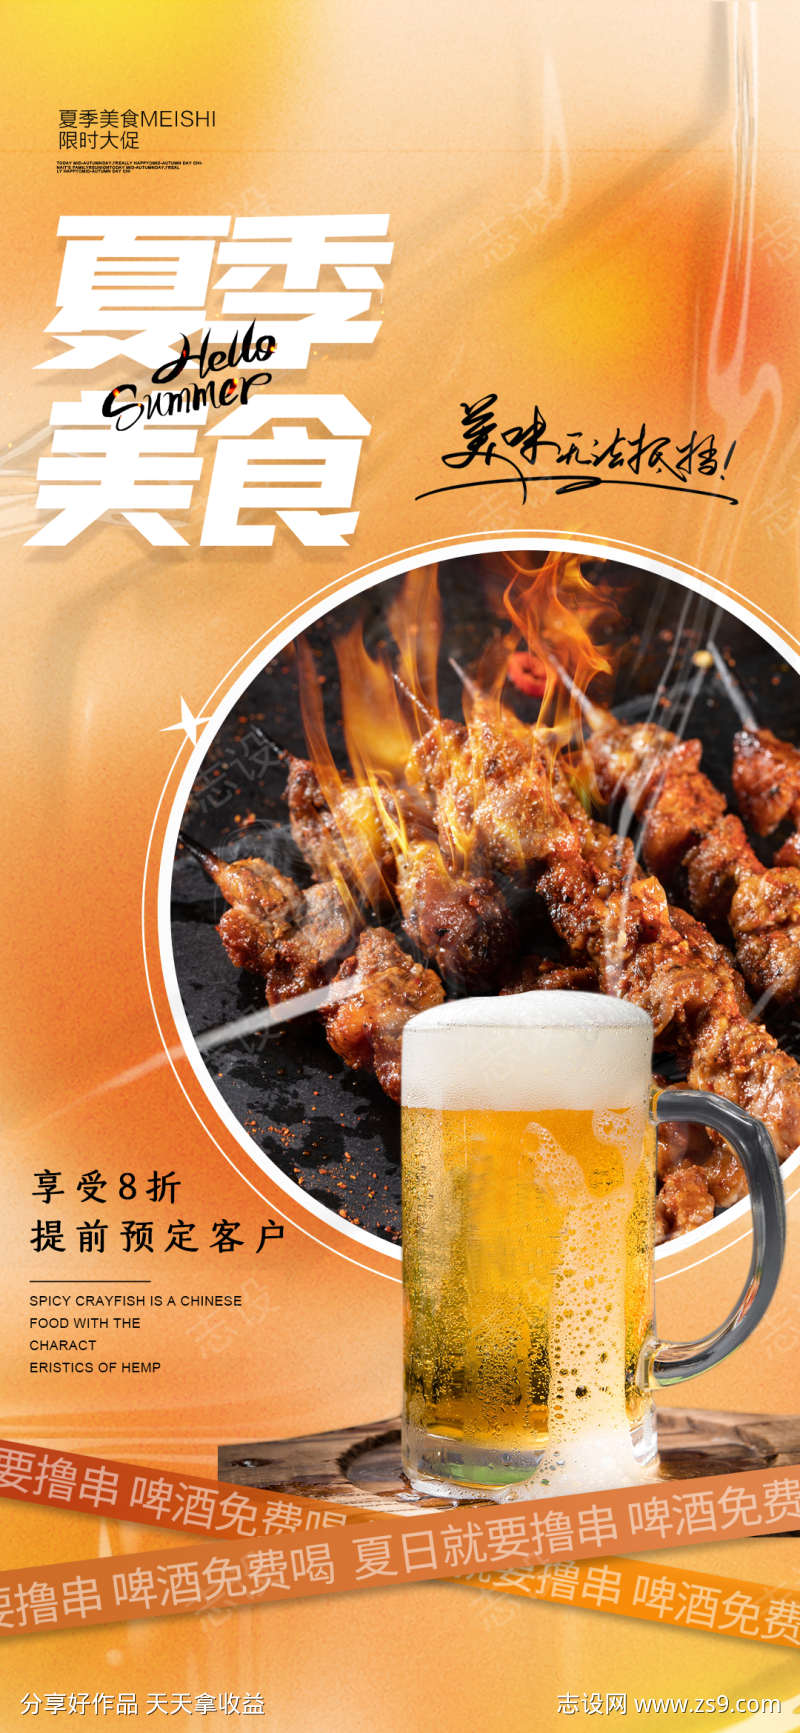 夏季美食啤酒烧烤促销海报